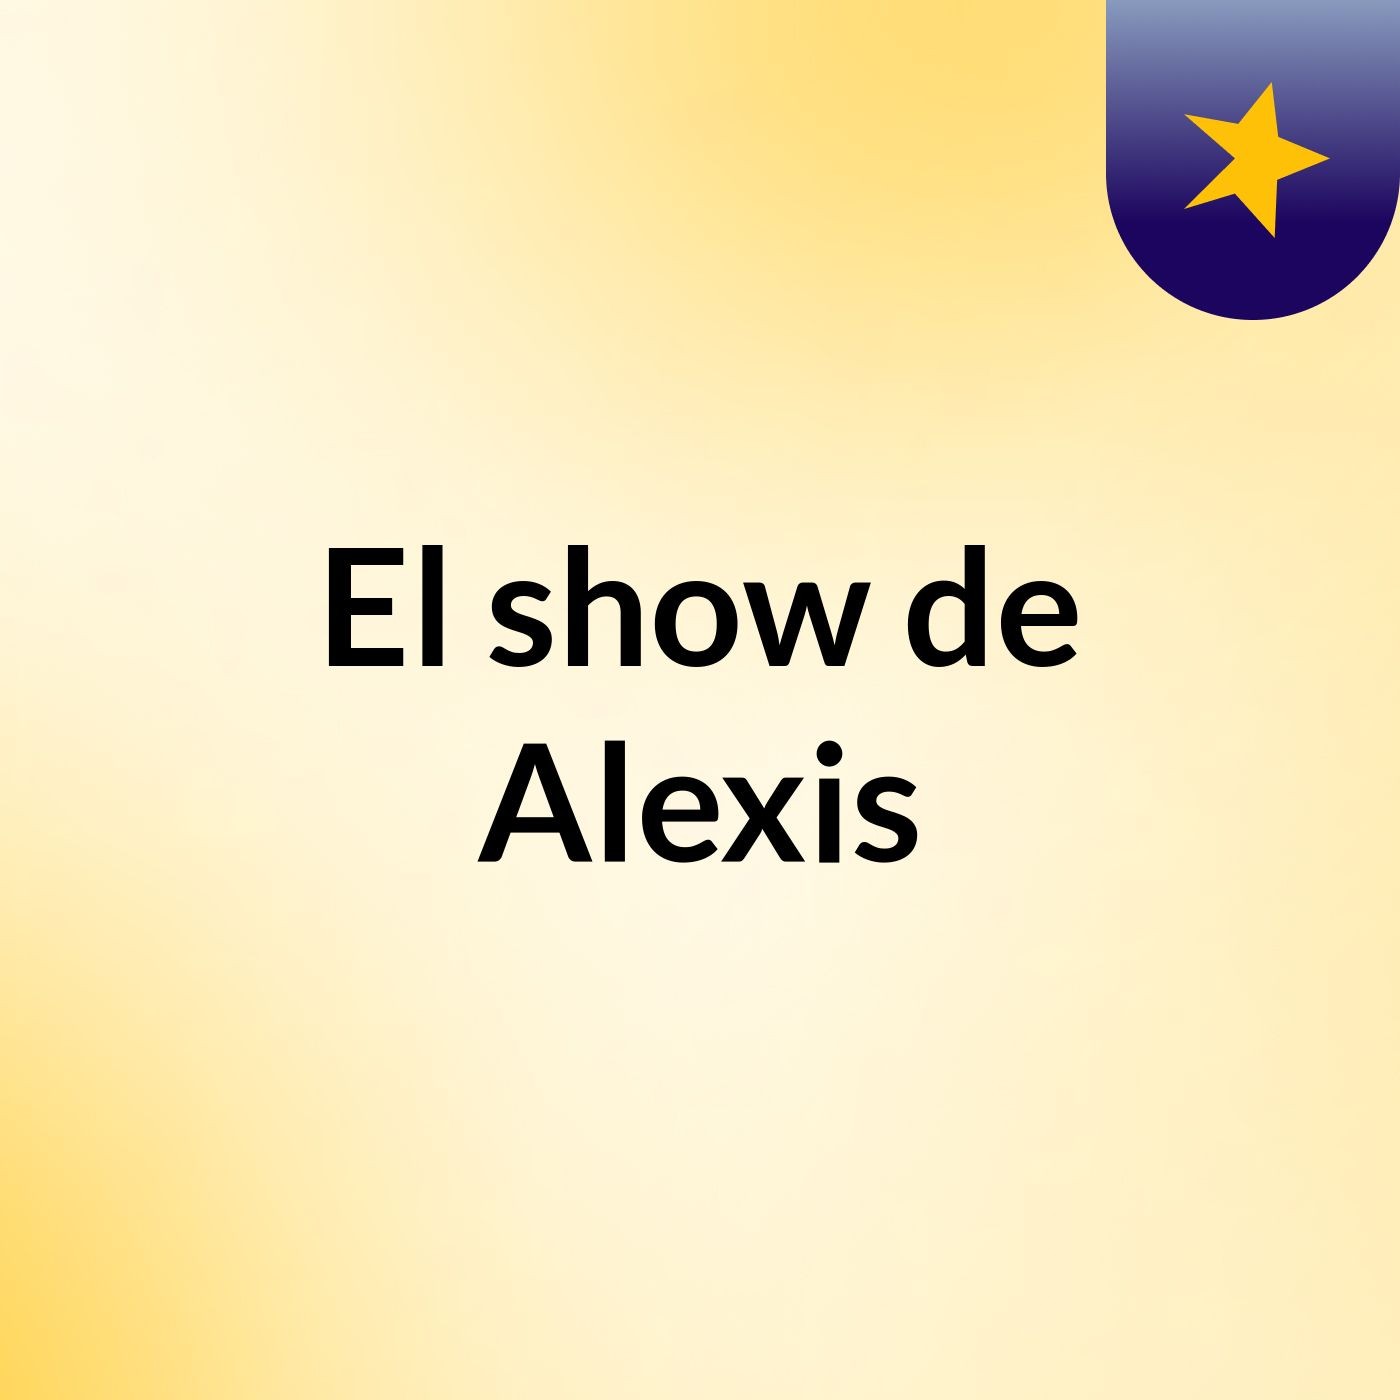 El show de Alexis